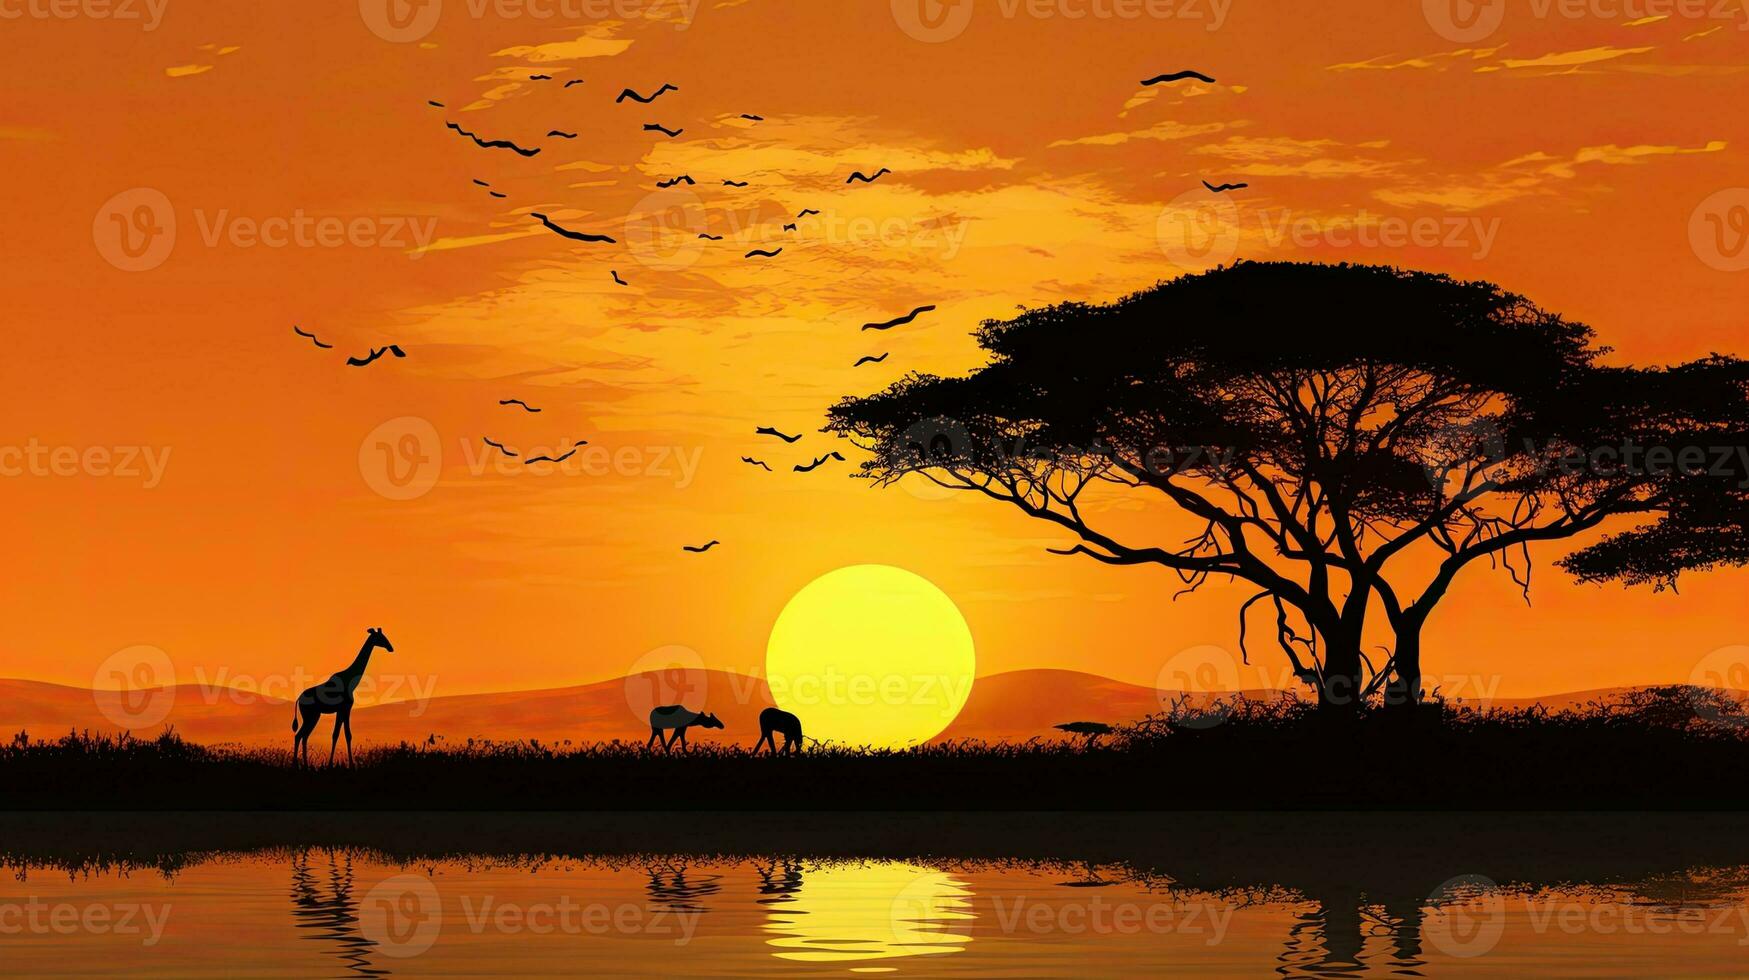 masaï mara s typique africain le coucher du soleil avec acacia des arbres et une girafe famille silhouette contre une réglage Soleil réfléchi sur l'eau photo